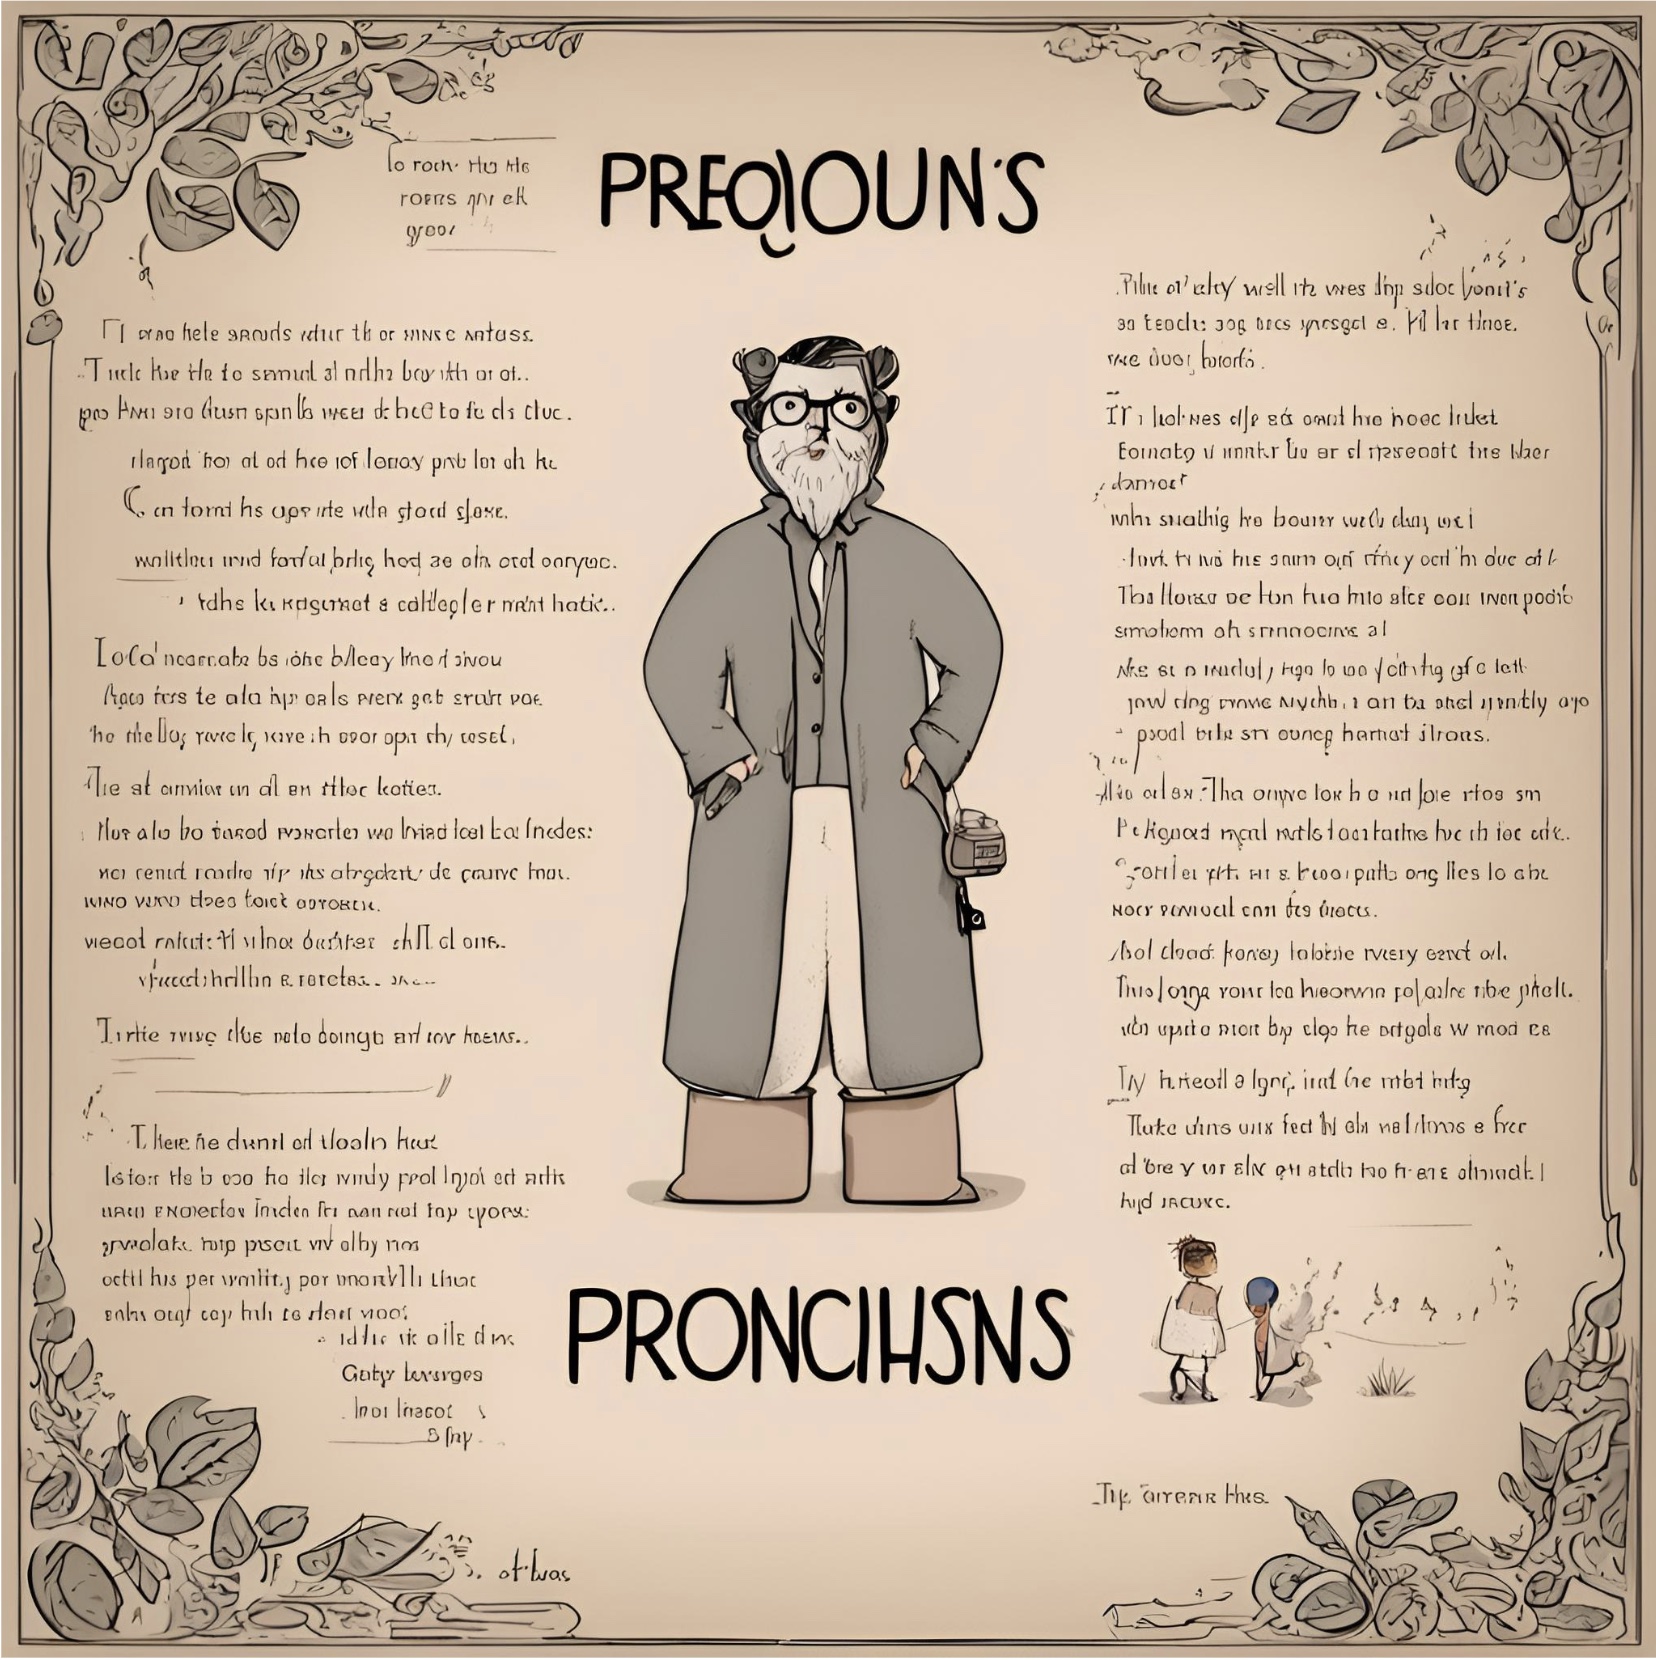 Pronouns & Proverbs